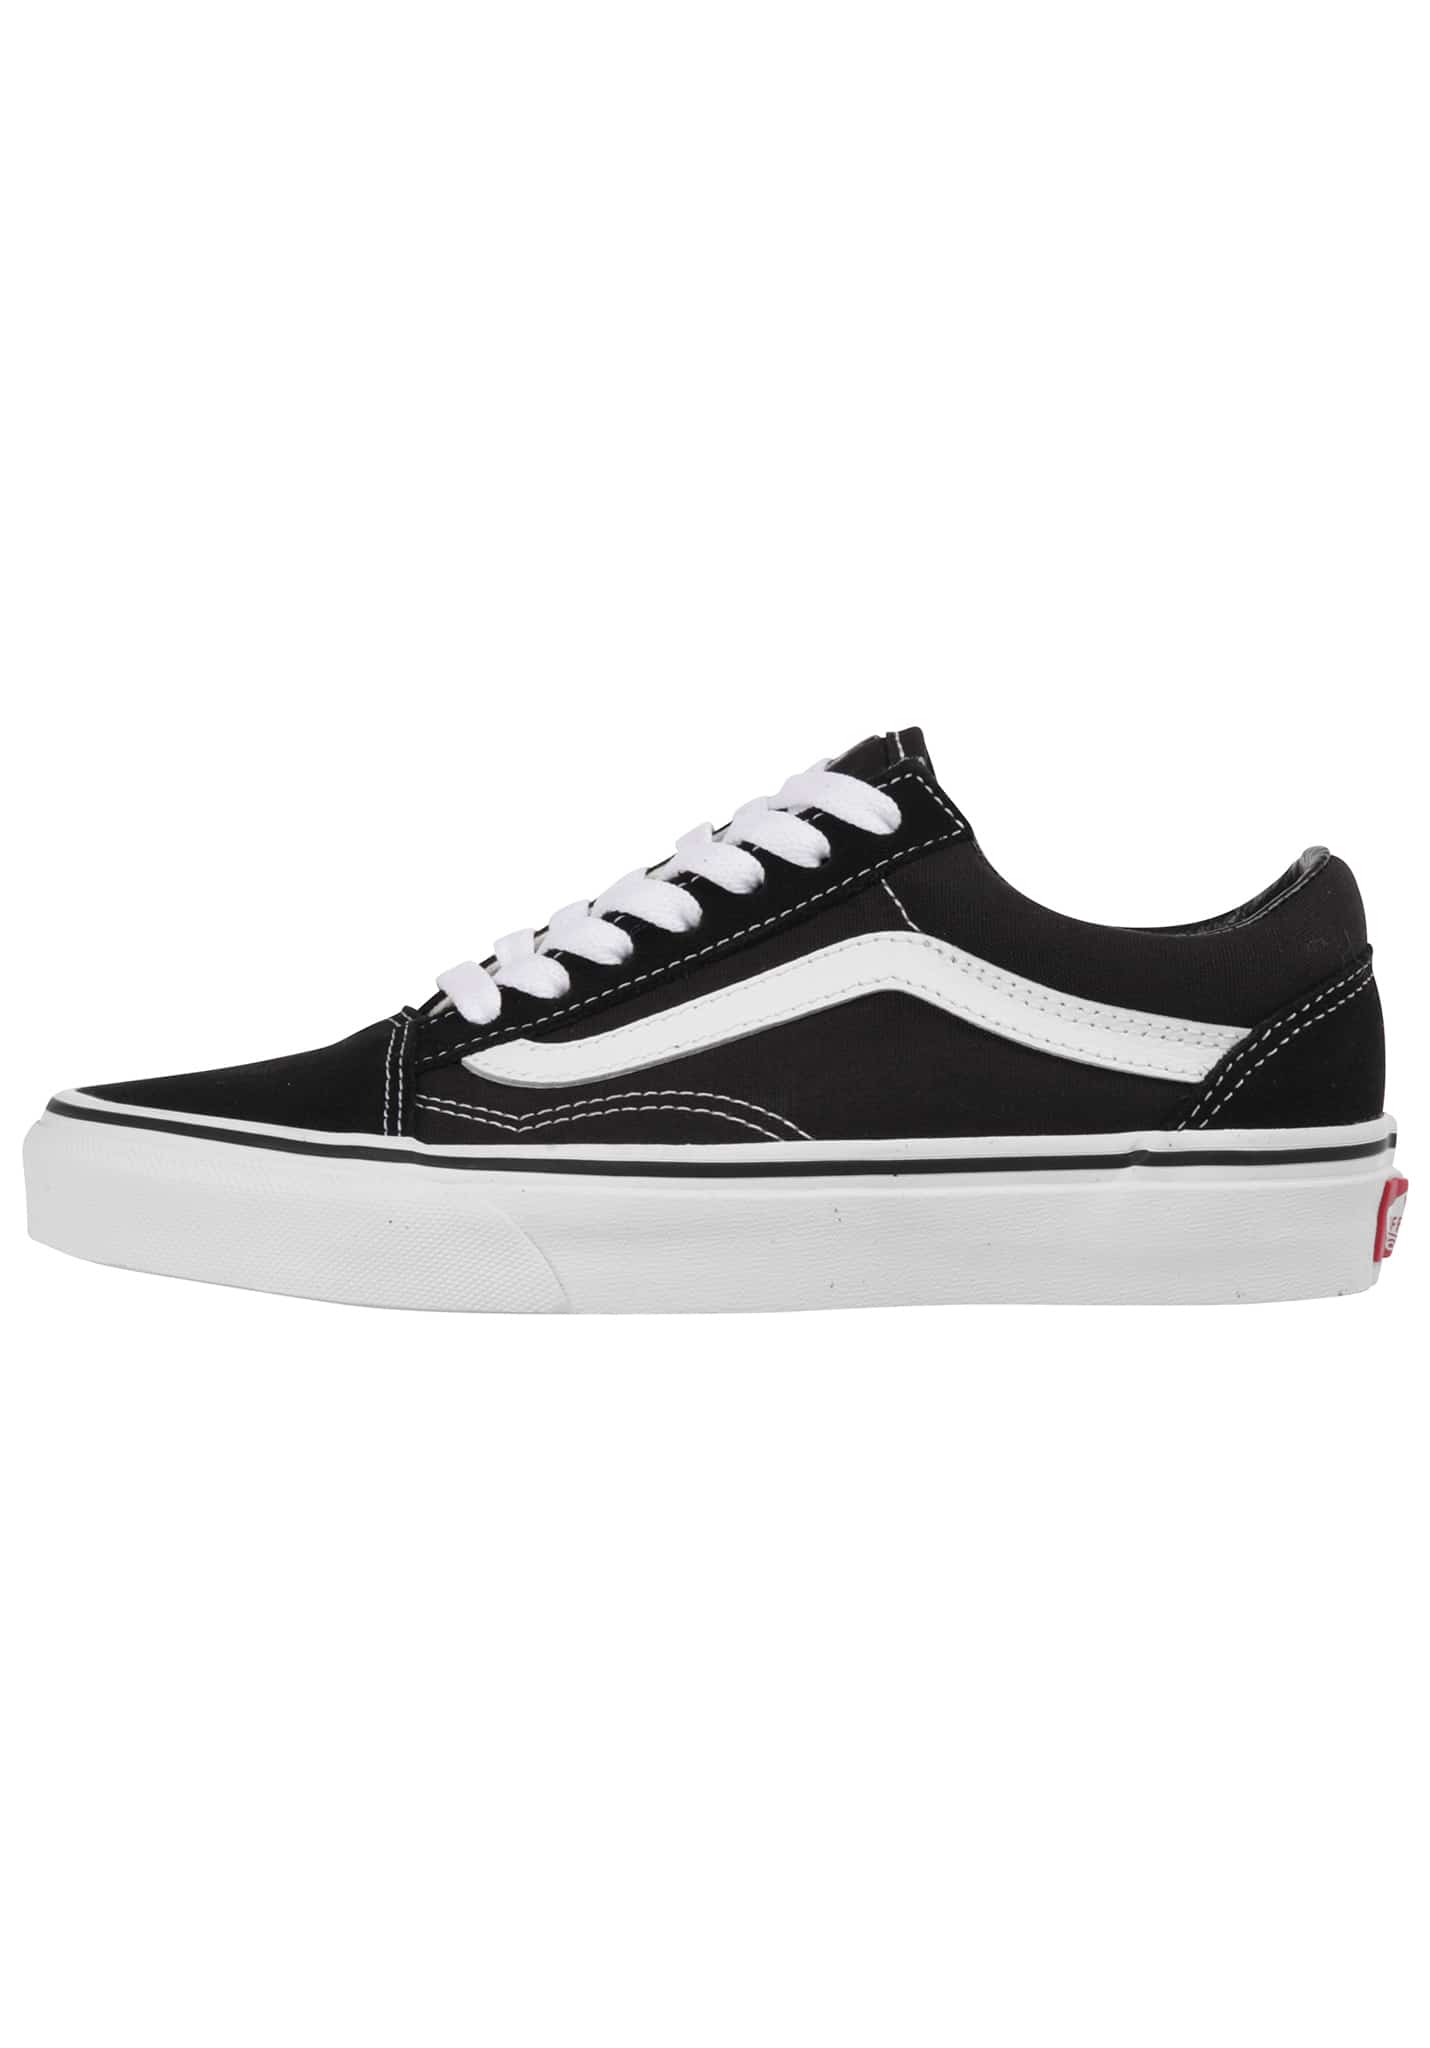 Vans Old Skool Sneaker black-white 45